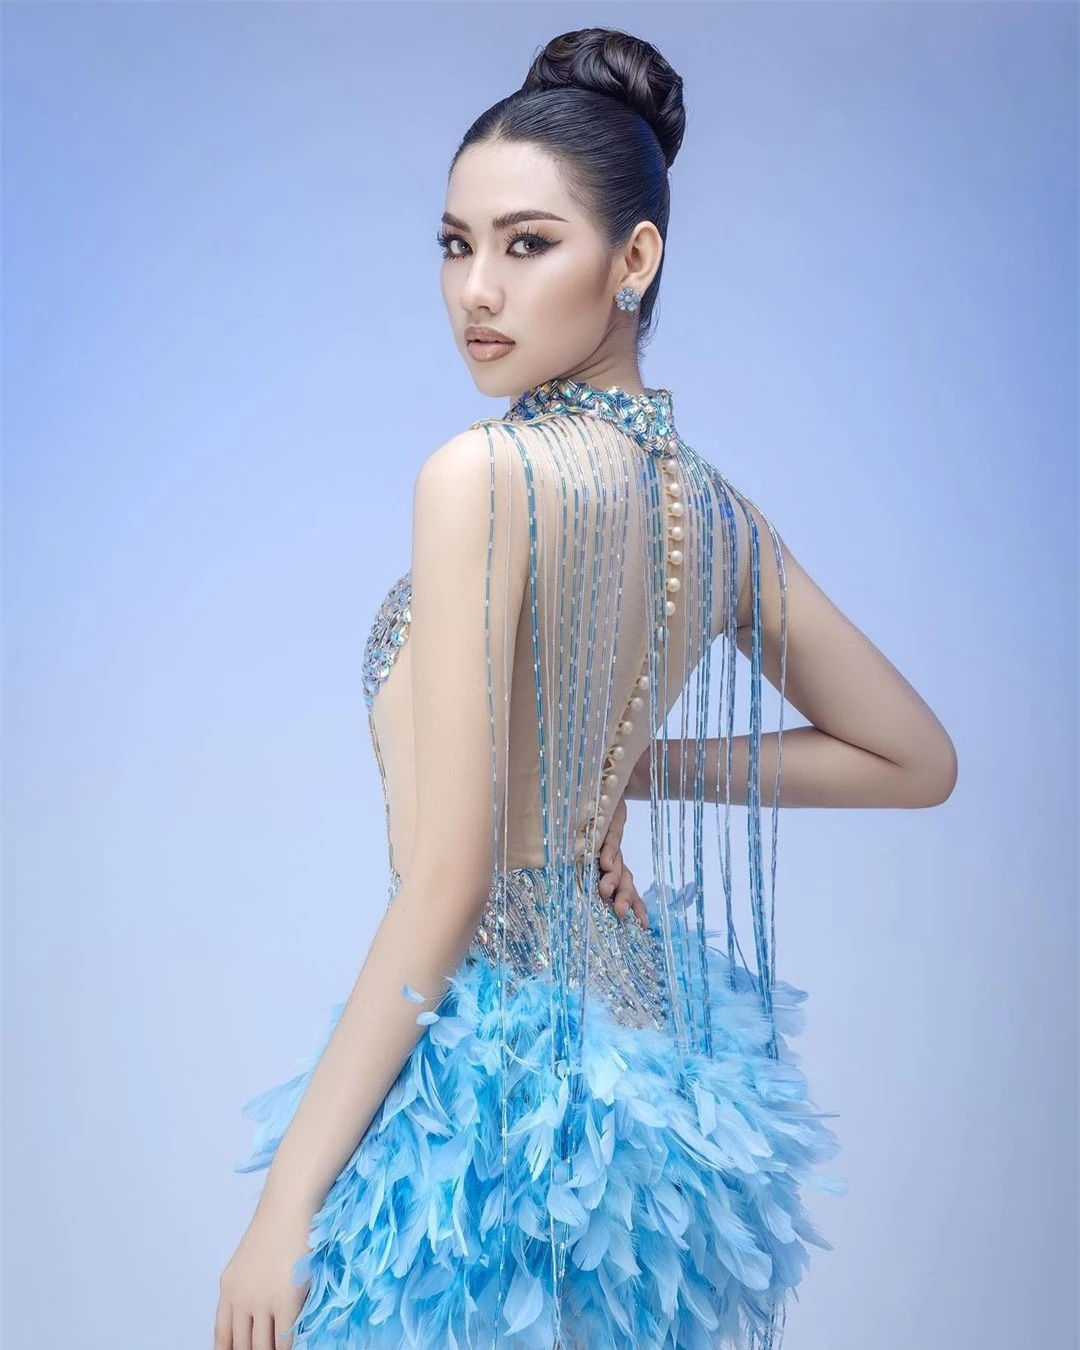 Tân Hoa hậu Hoàn vũ Campuchia được khen ngợi ảnh 7